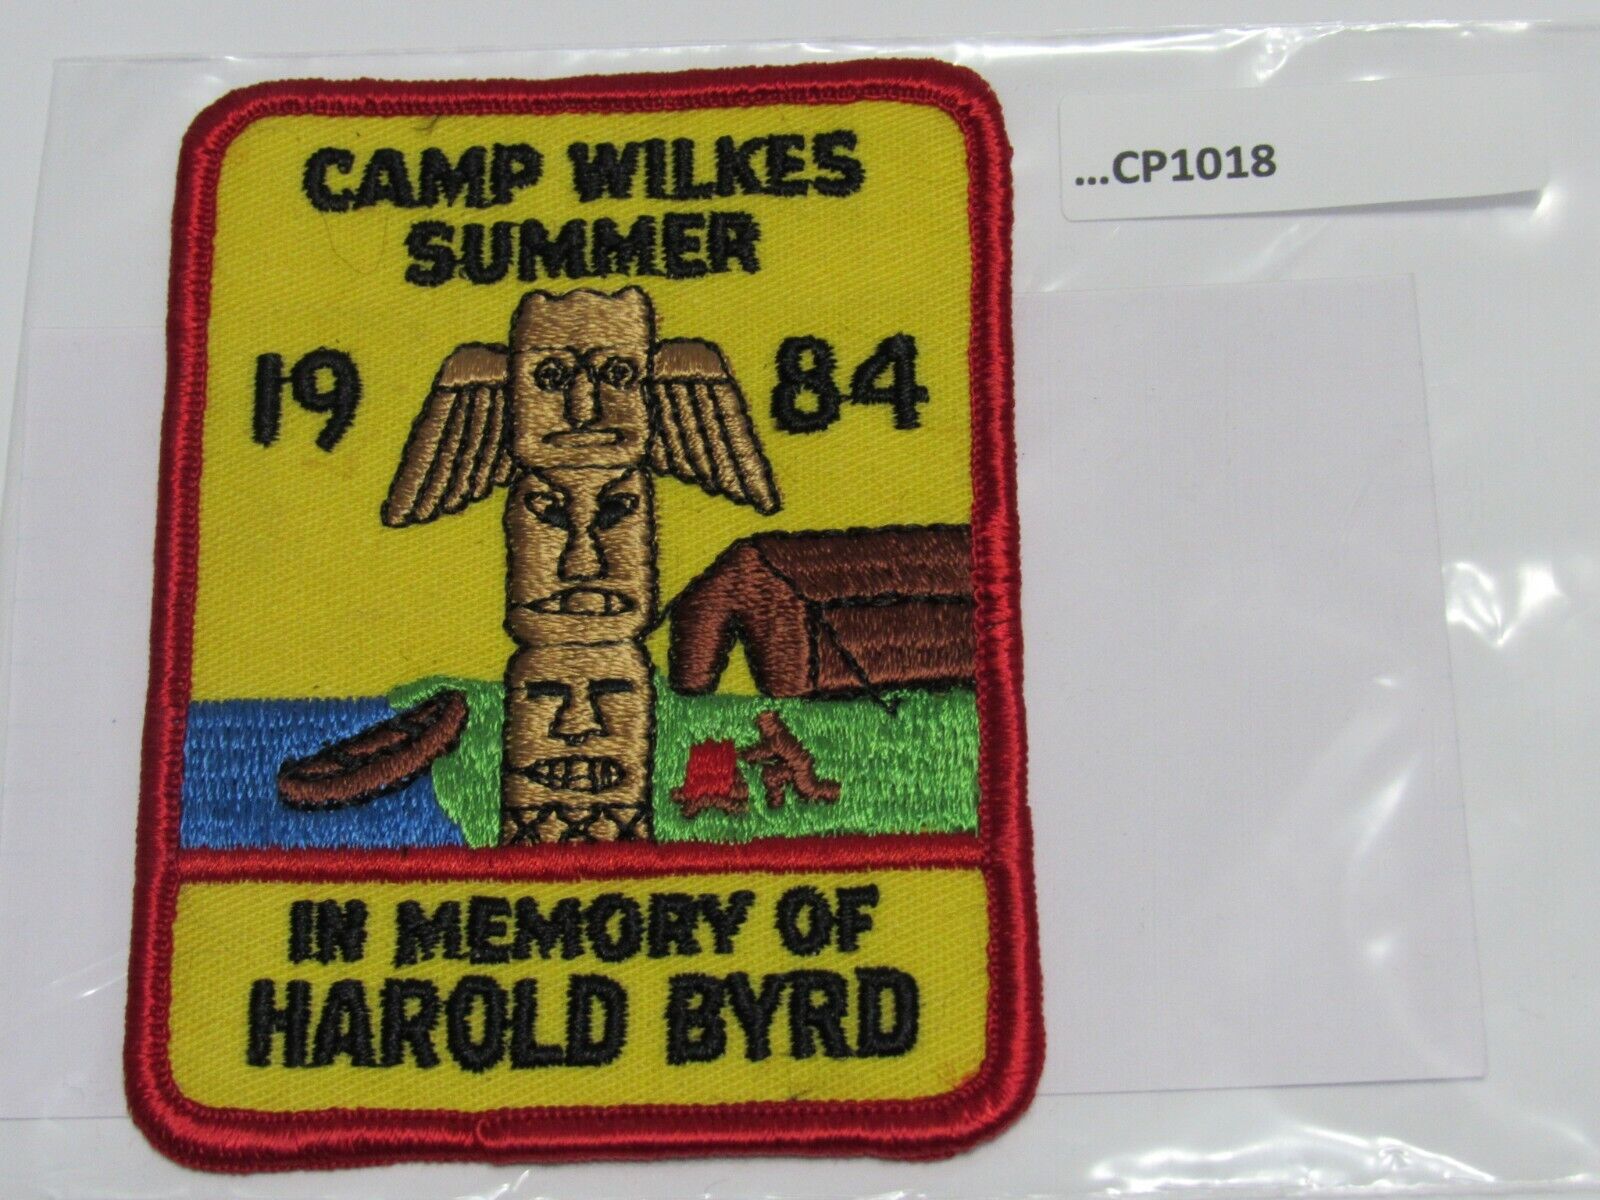 CAMP WILKES SUMMER 1984 IN MEMORY OF HAROLD BYRD CP1018